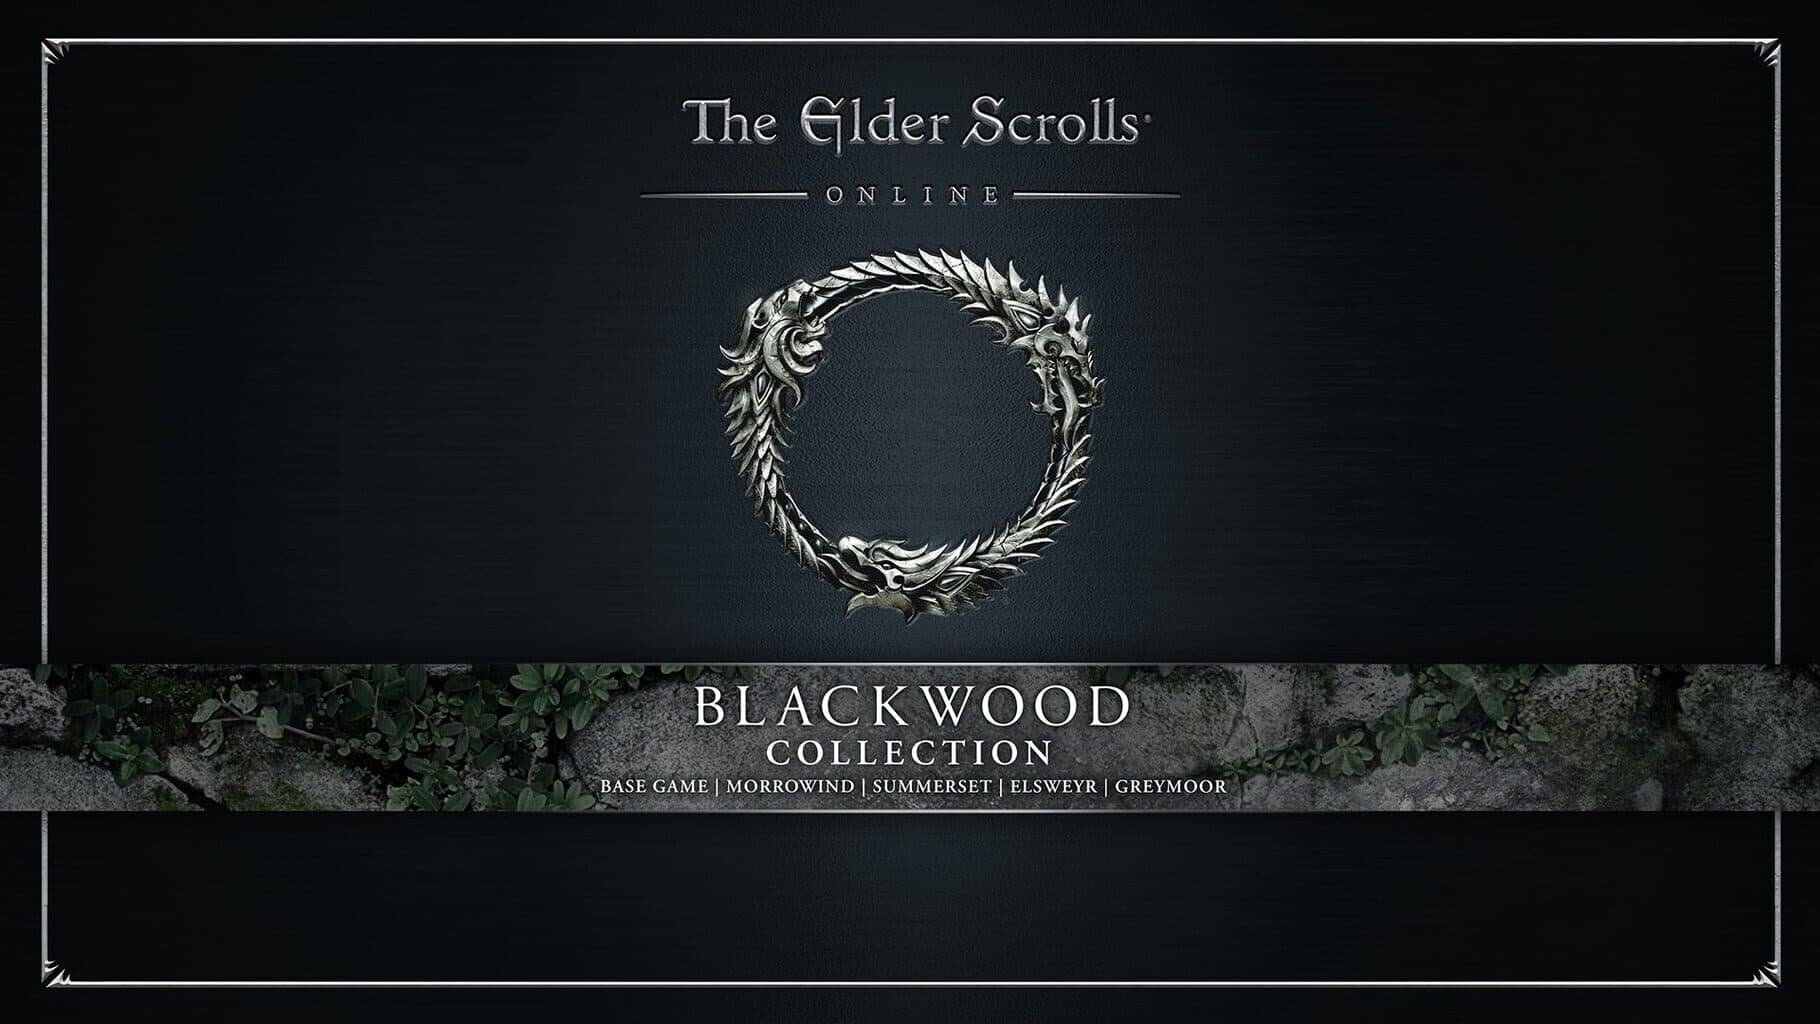 The Elder Scrolls Online: Blackwood Collection Image